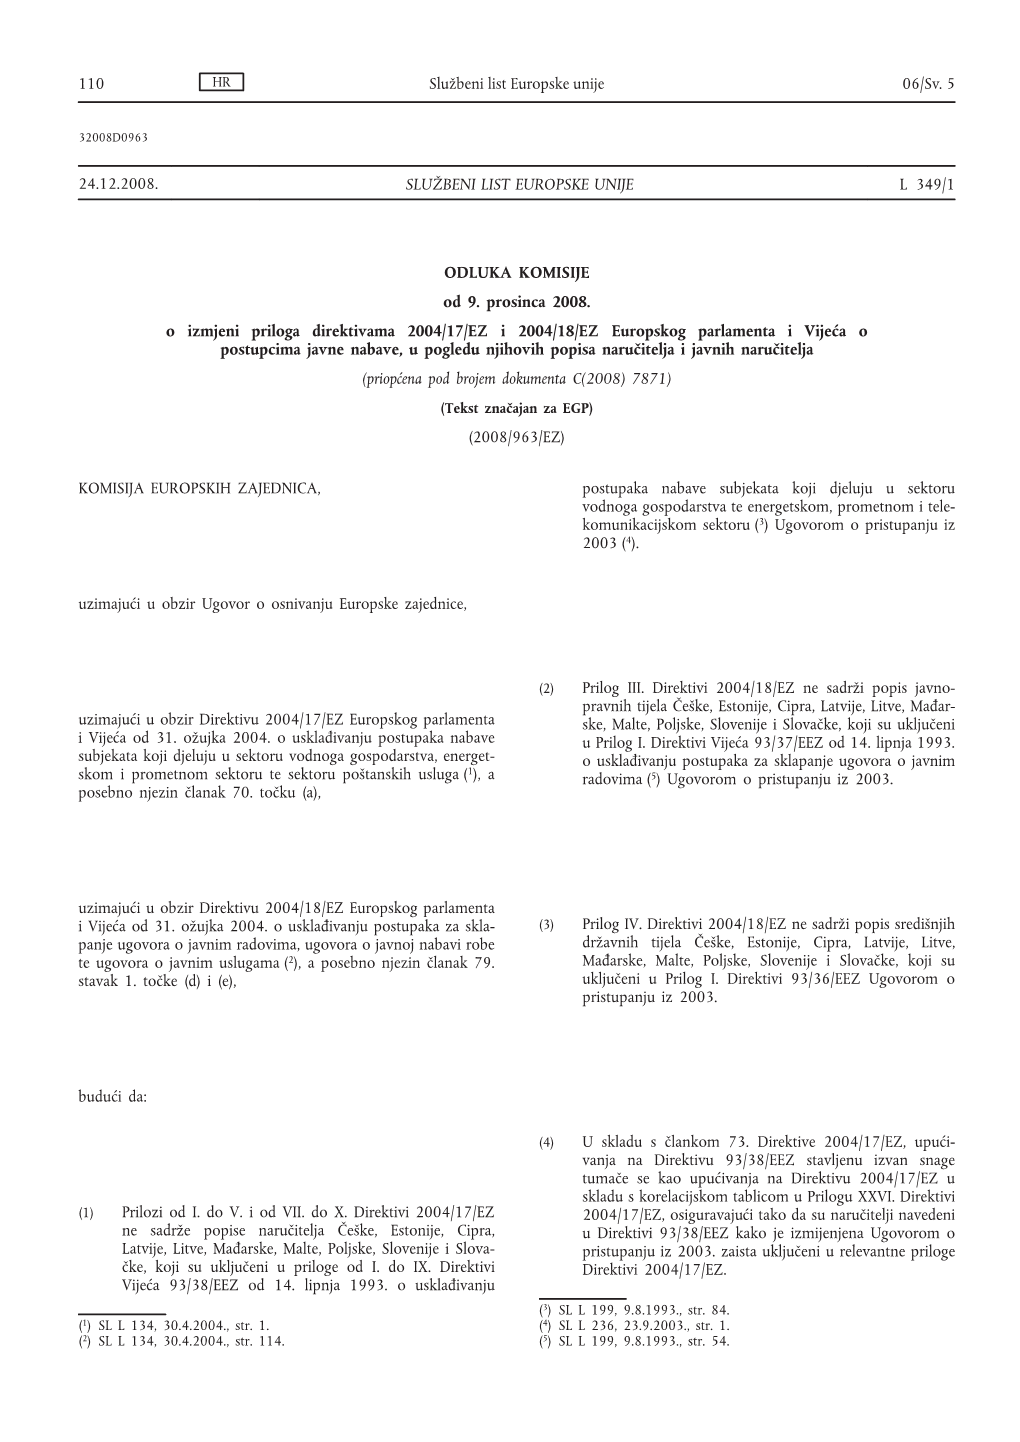 Odluka Komisije Od 9. Prosinca 2008. O Izmjeni Priloga Direktivama 2004